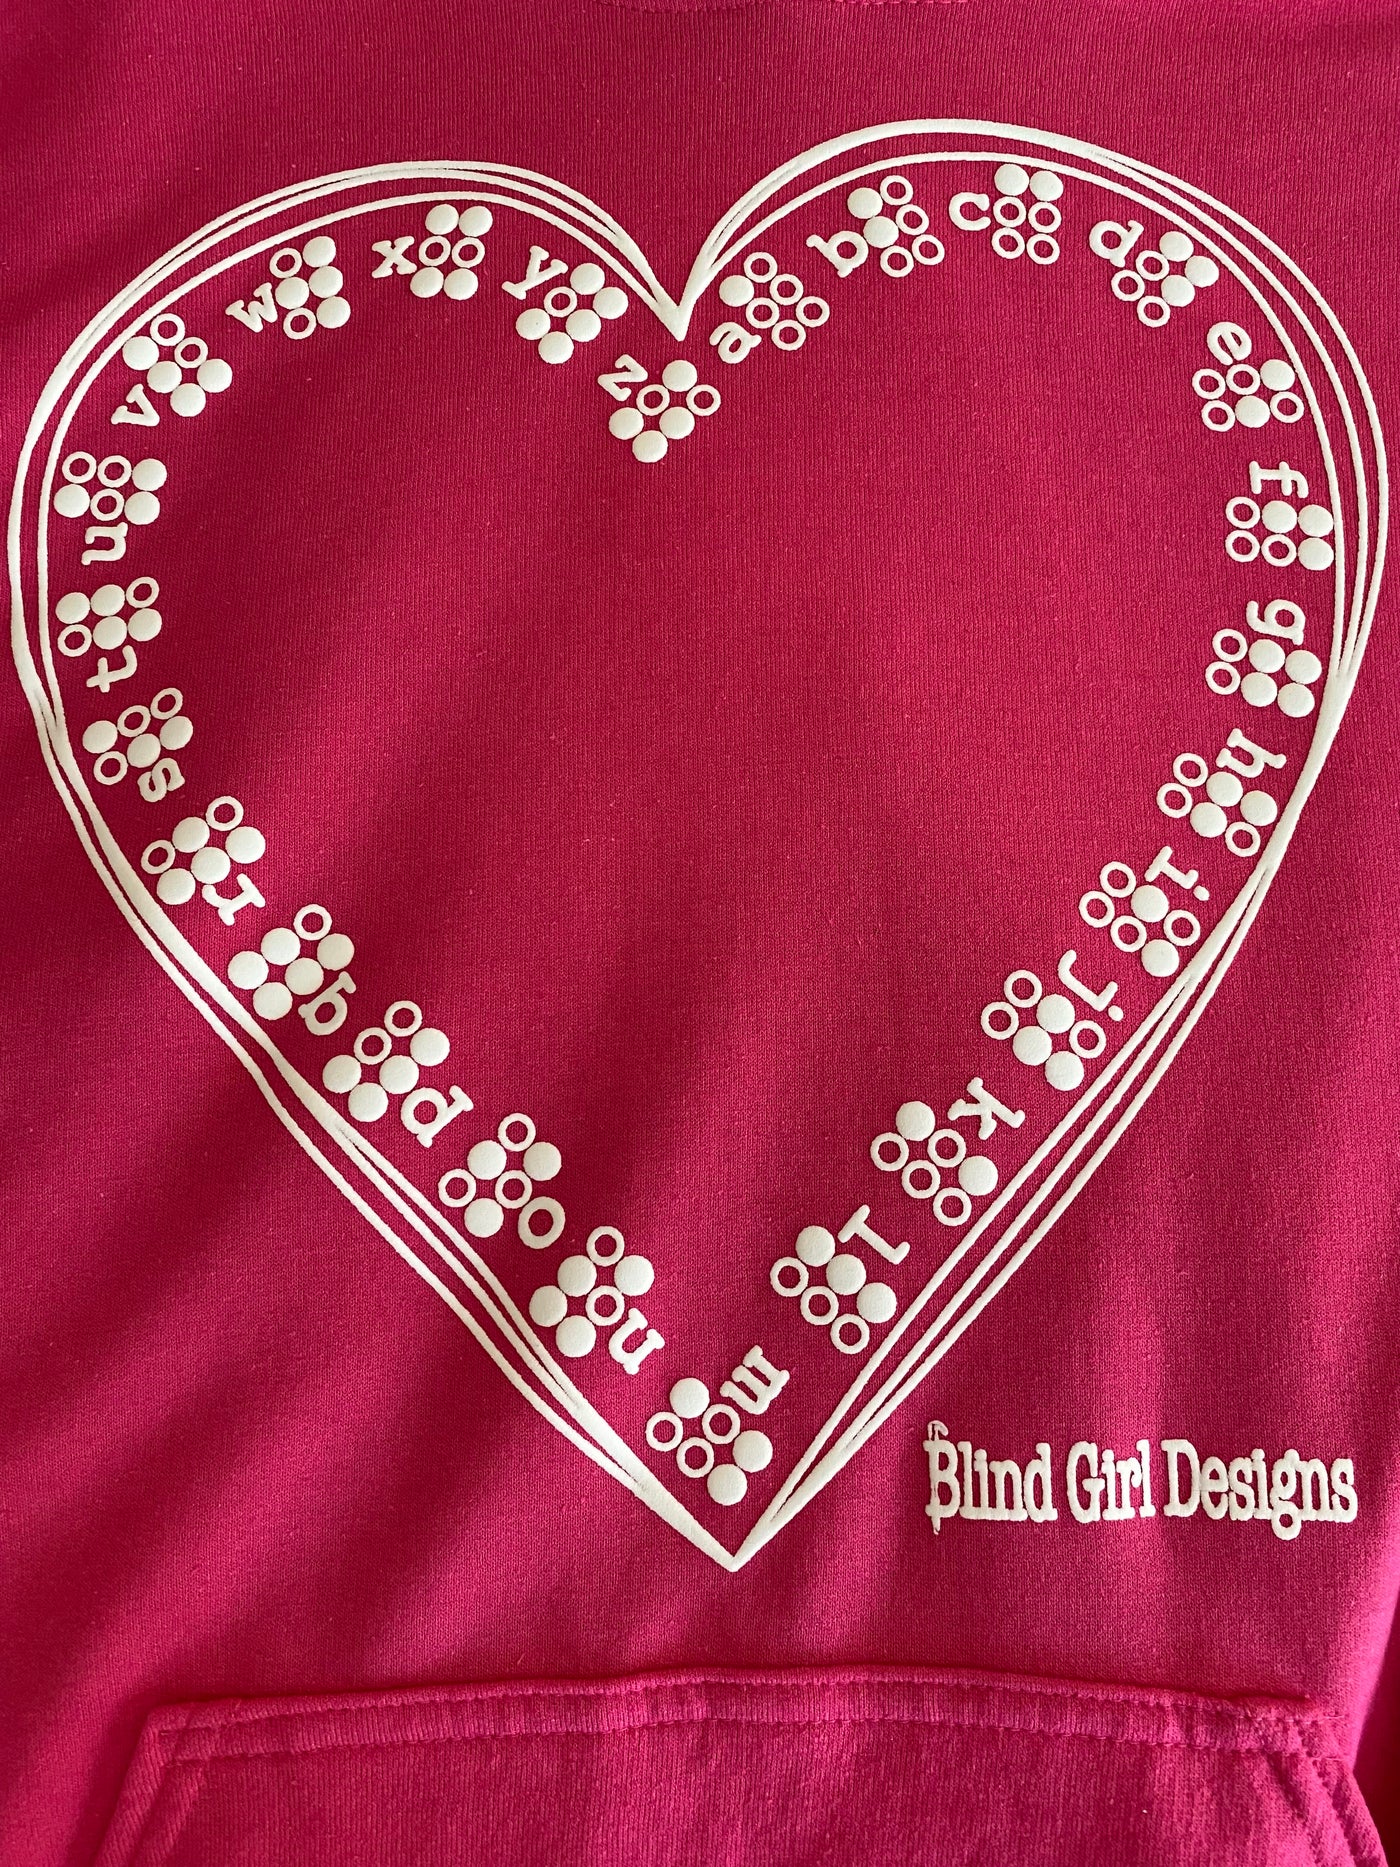 New! 3D Braille Heart T-Shirt Pink